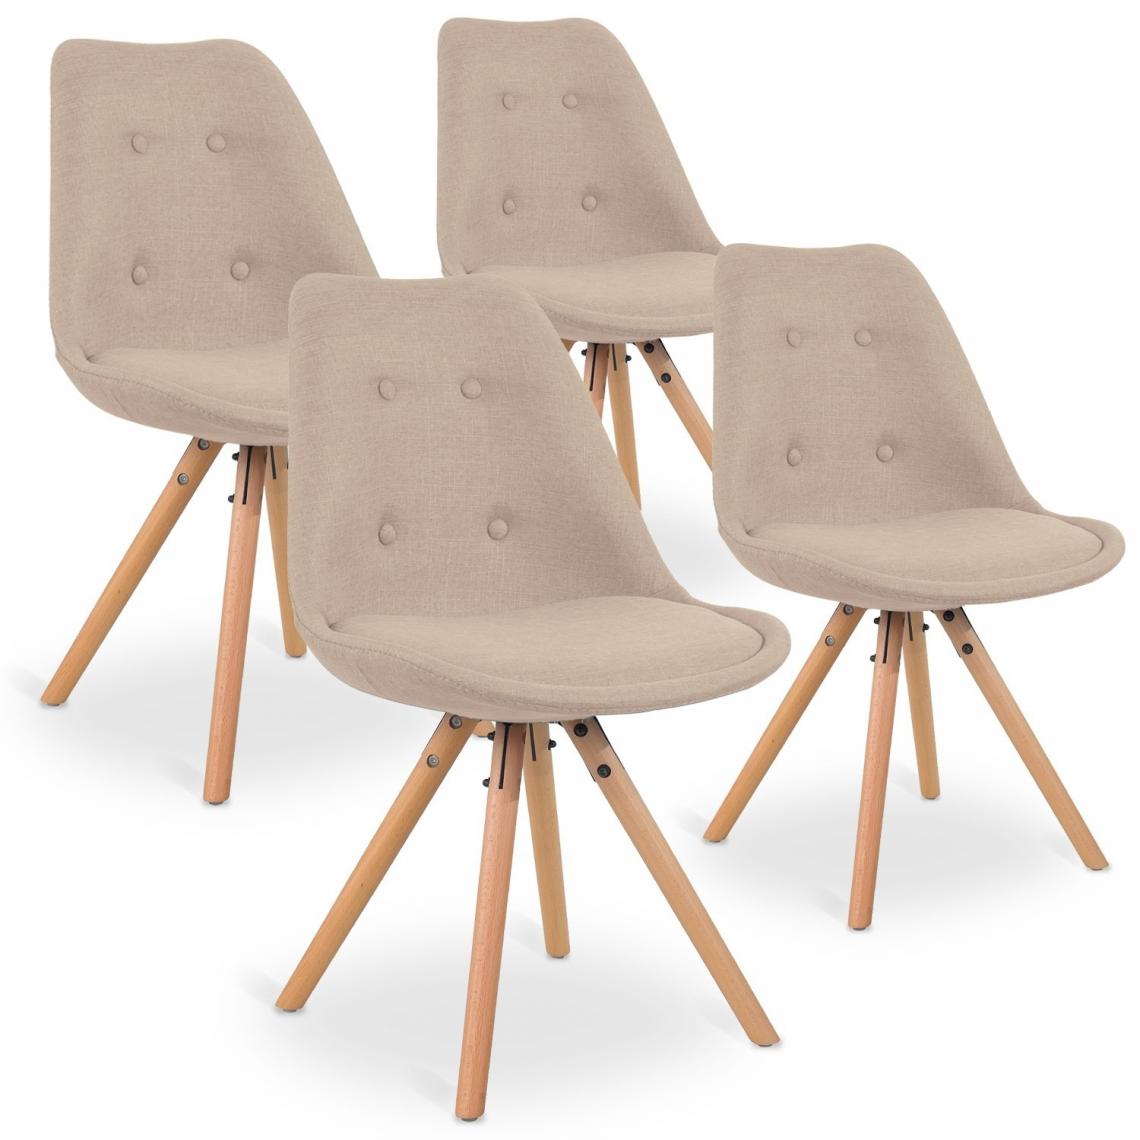 marque generique - Lot de 4 chaises scandinaves Frida tissu Beige - Chaises